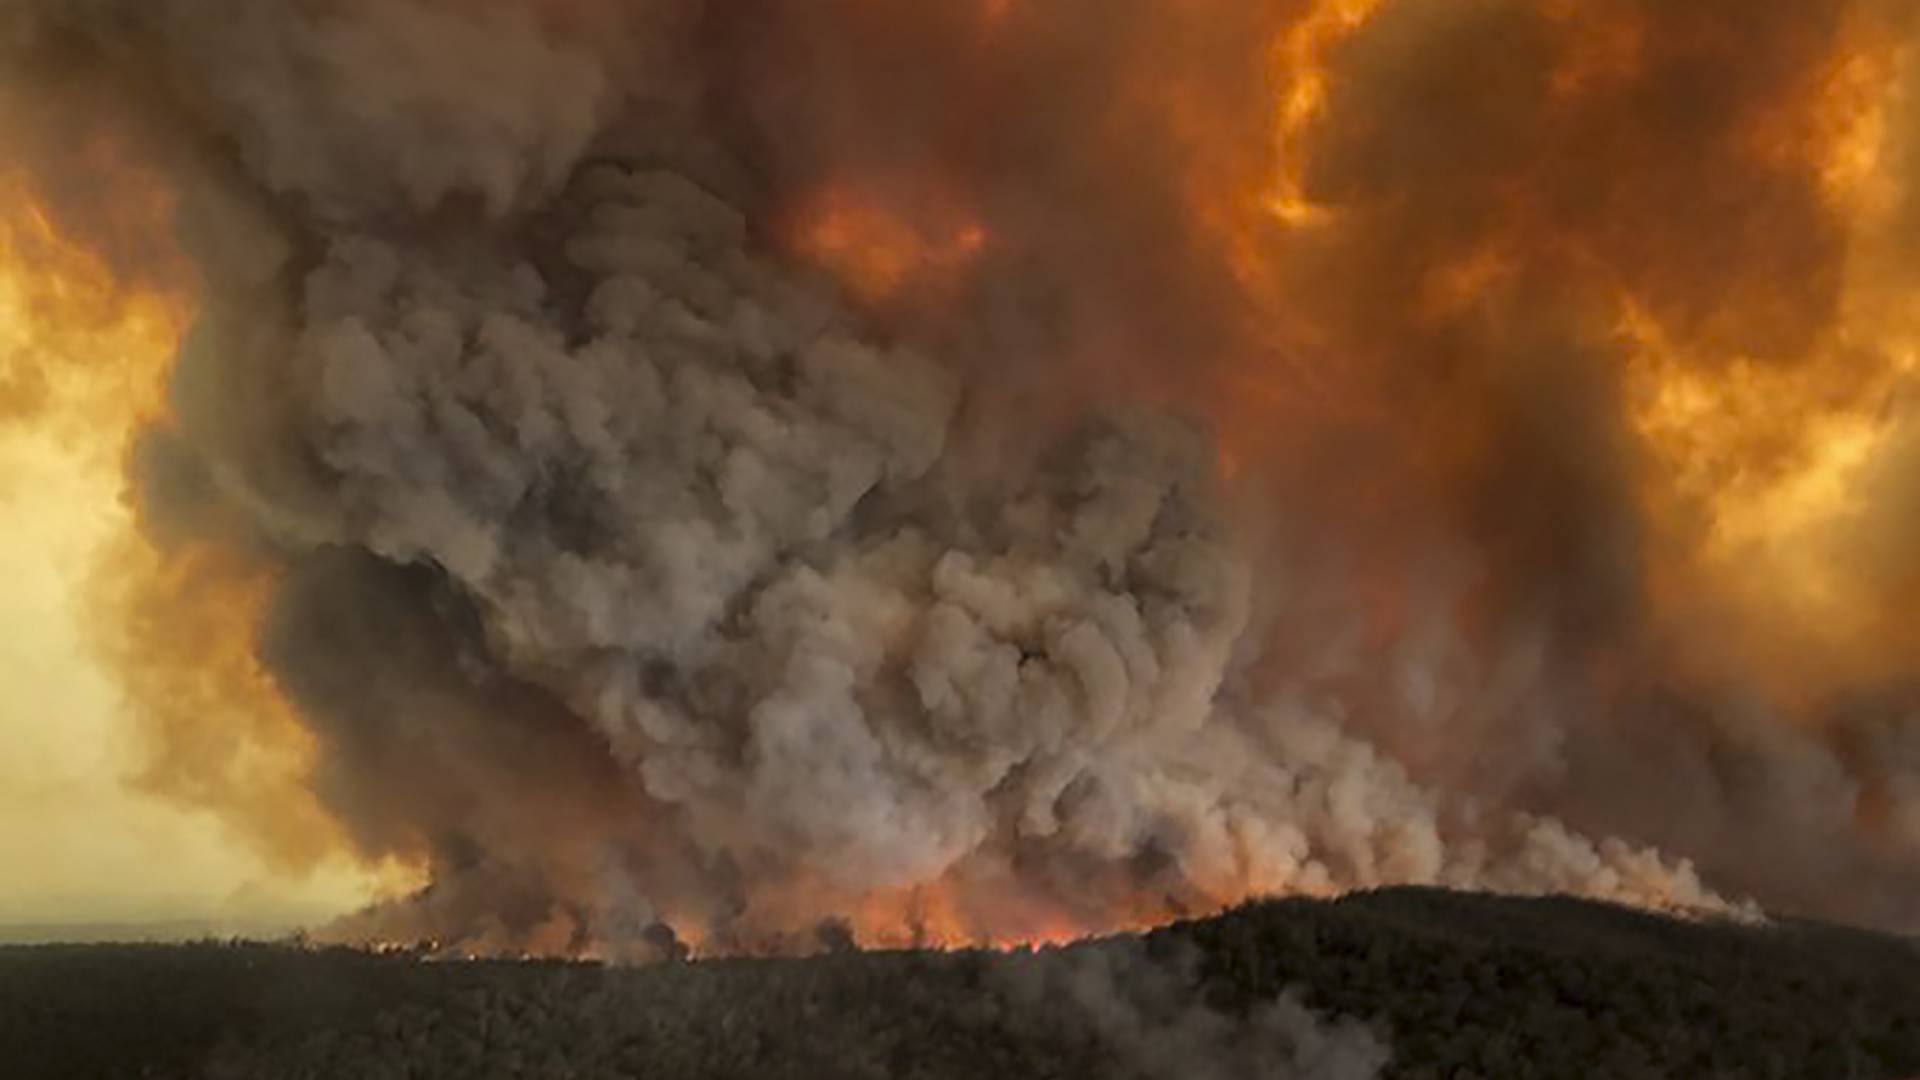 Po viac ako 240 dňoch je koniec, väčšina požiarov buša v Austrálii je už uhasená